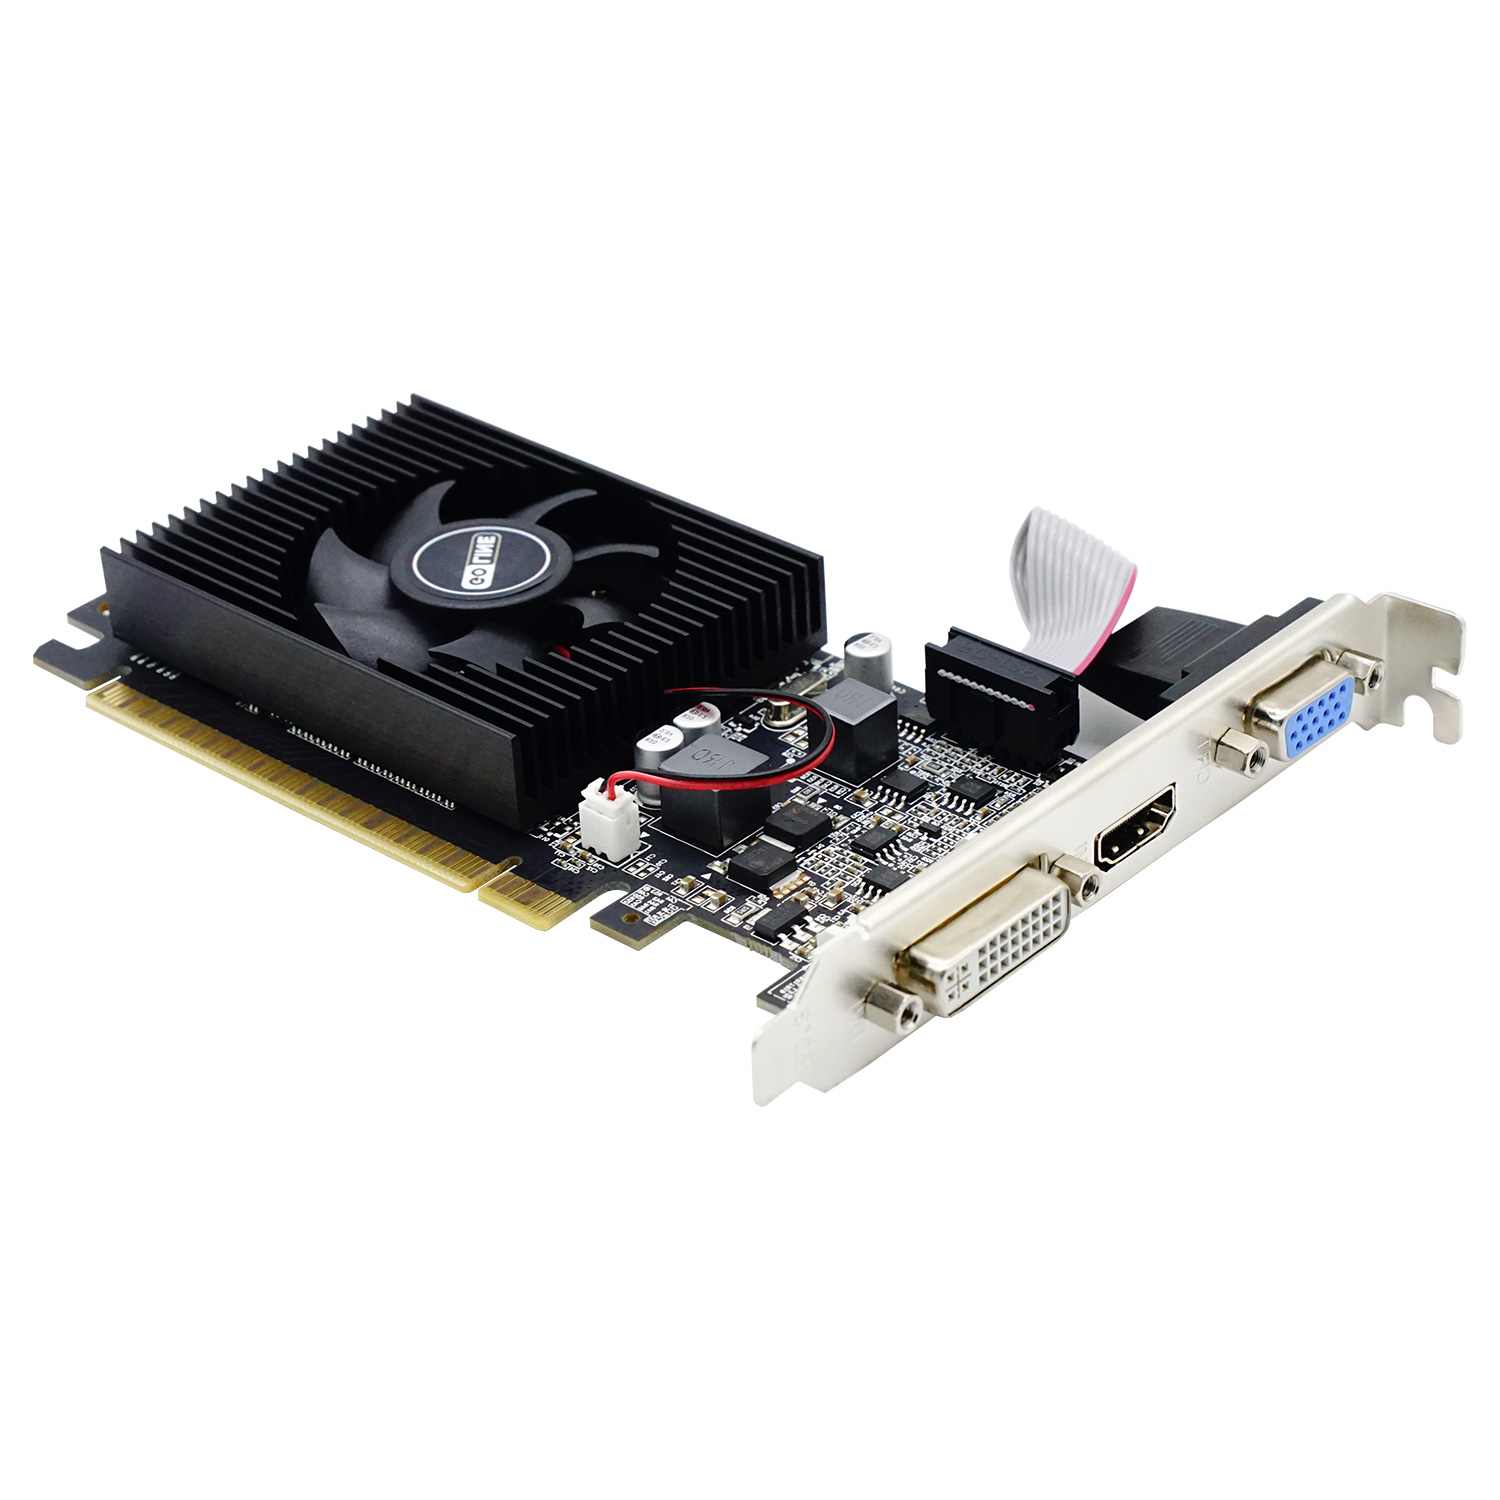 Placa de Vídeo Goline GT 610 NVIDIA GeForce GT 610 1GB DDR3 - GL-GT610-1GB-D3-V1 (1 Ano de Garantia)